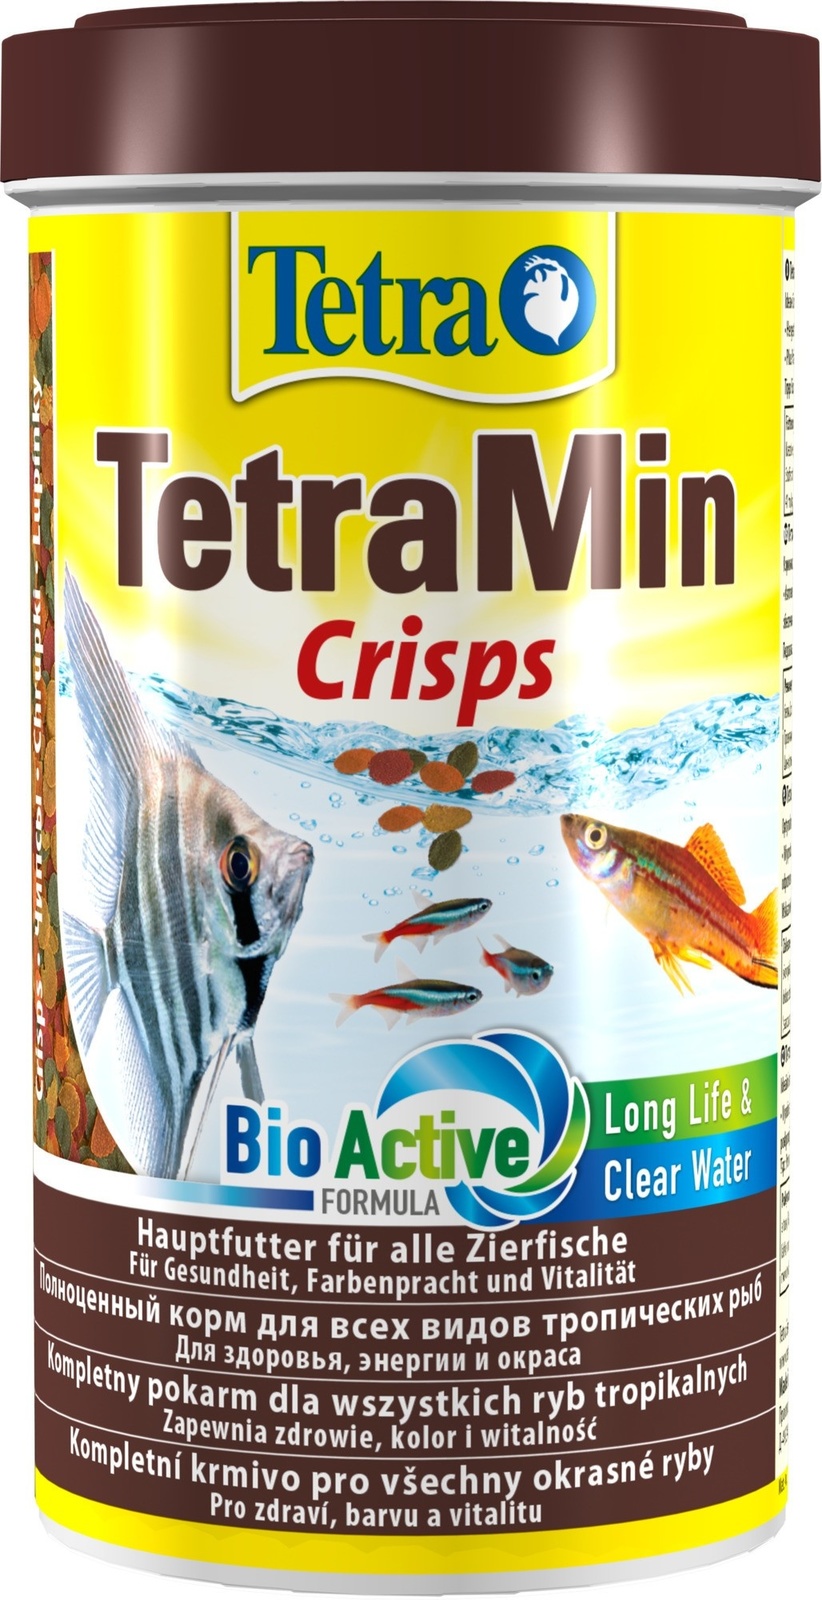 Tetra (корма) Tetra (корма) корм для всех видов тропических рыб, чипсы (110 г) tetra корма tetra корма корм для всех видов тропических рыб гранулы tetramin granules 100 г